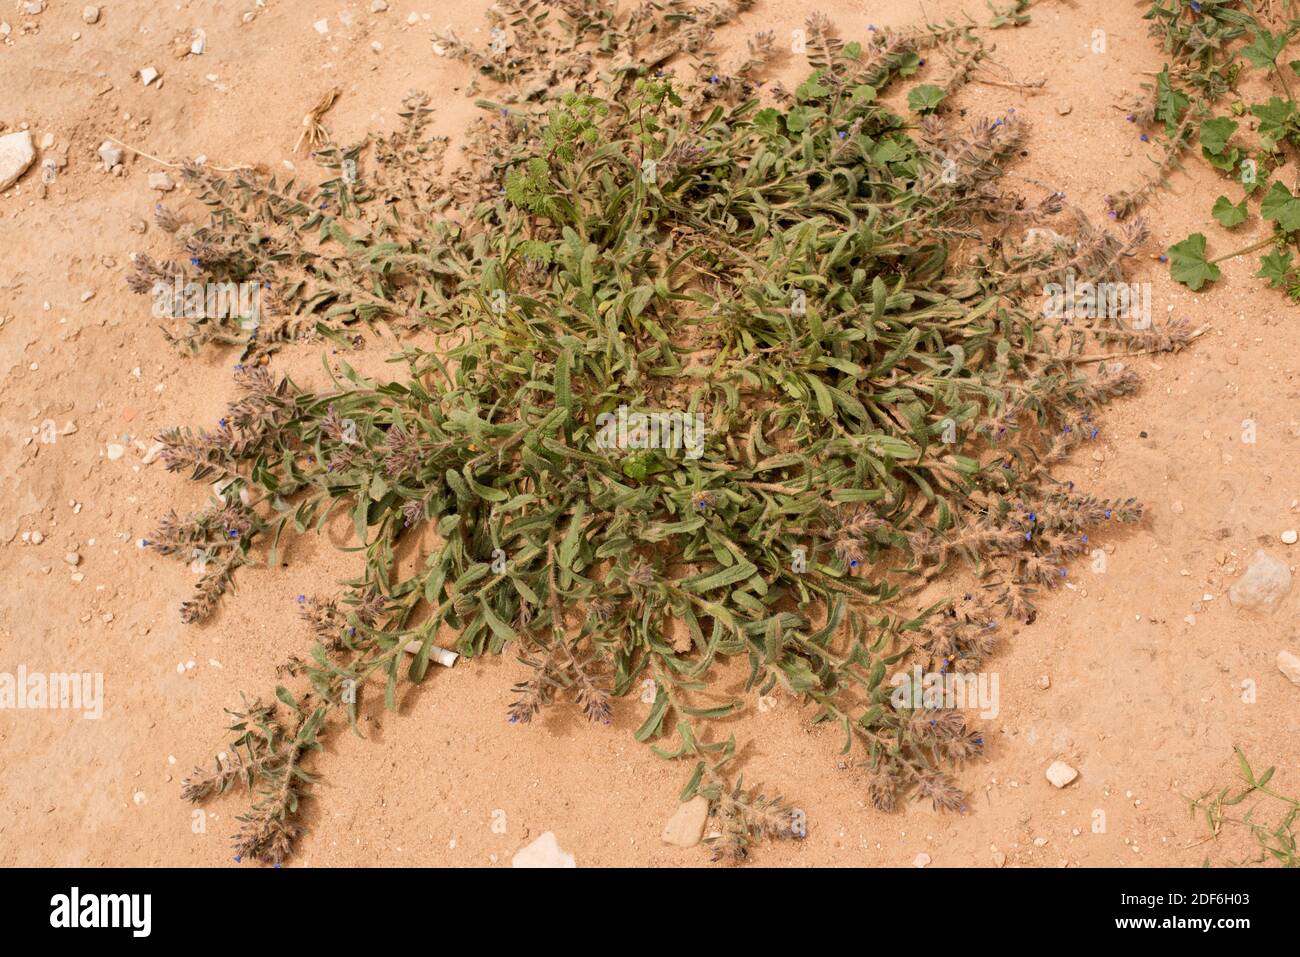 Alkanet (Alkanna tinctoria); le sue radici sono usate come colorante rosso. Deserto di Wadi Rum, Giordania. Foto Stock